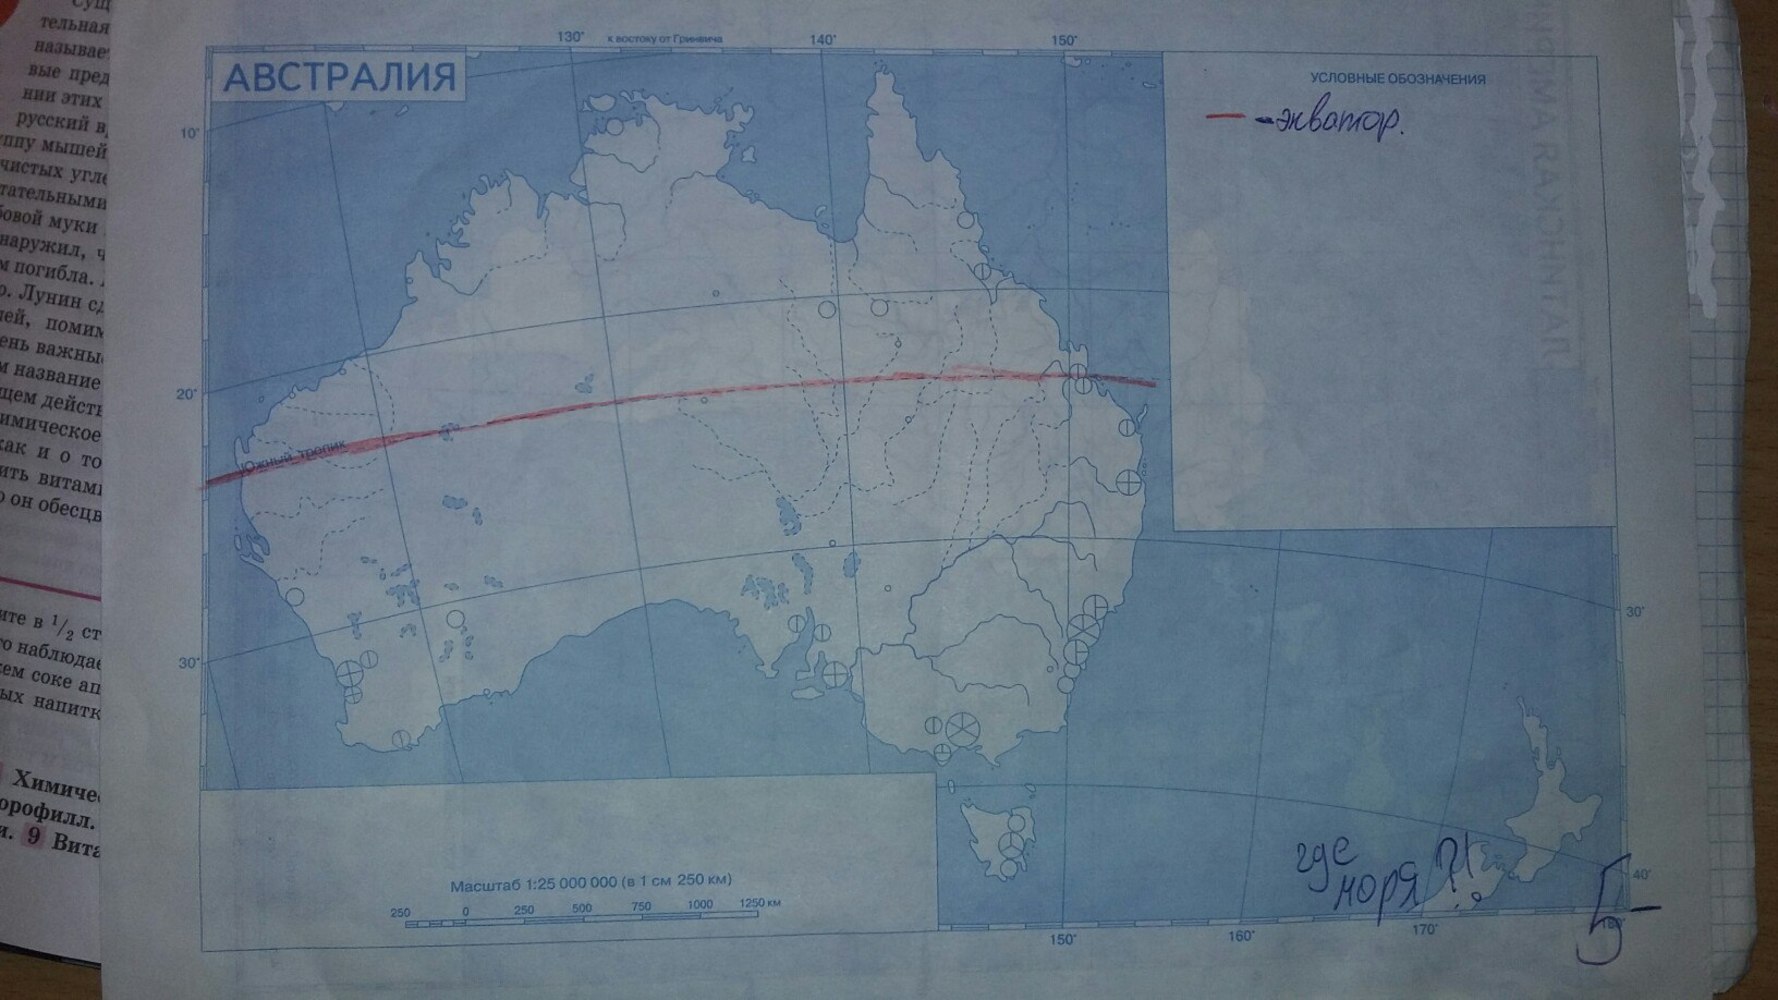 Австралия и океания 7 класс тест ответы. География 7 класс контурные карты Австралия гдз. Контурные карты по географии 7 класс Полярная звезда Австралия. Контурная карта Австралии 7 класс. Контурная карта Австралии 10 класс.